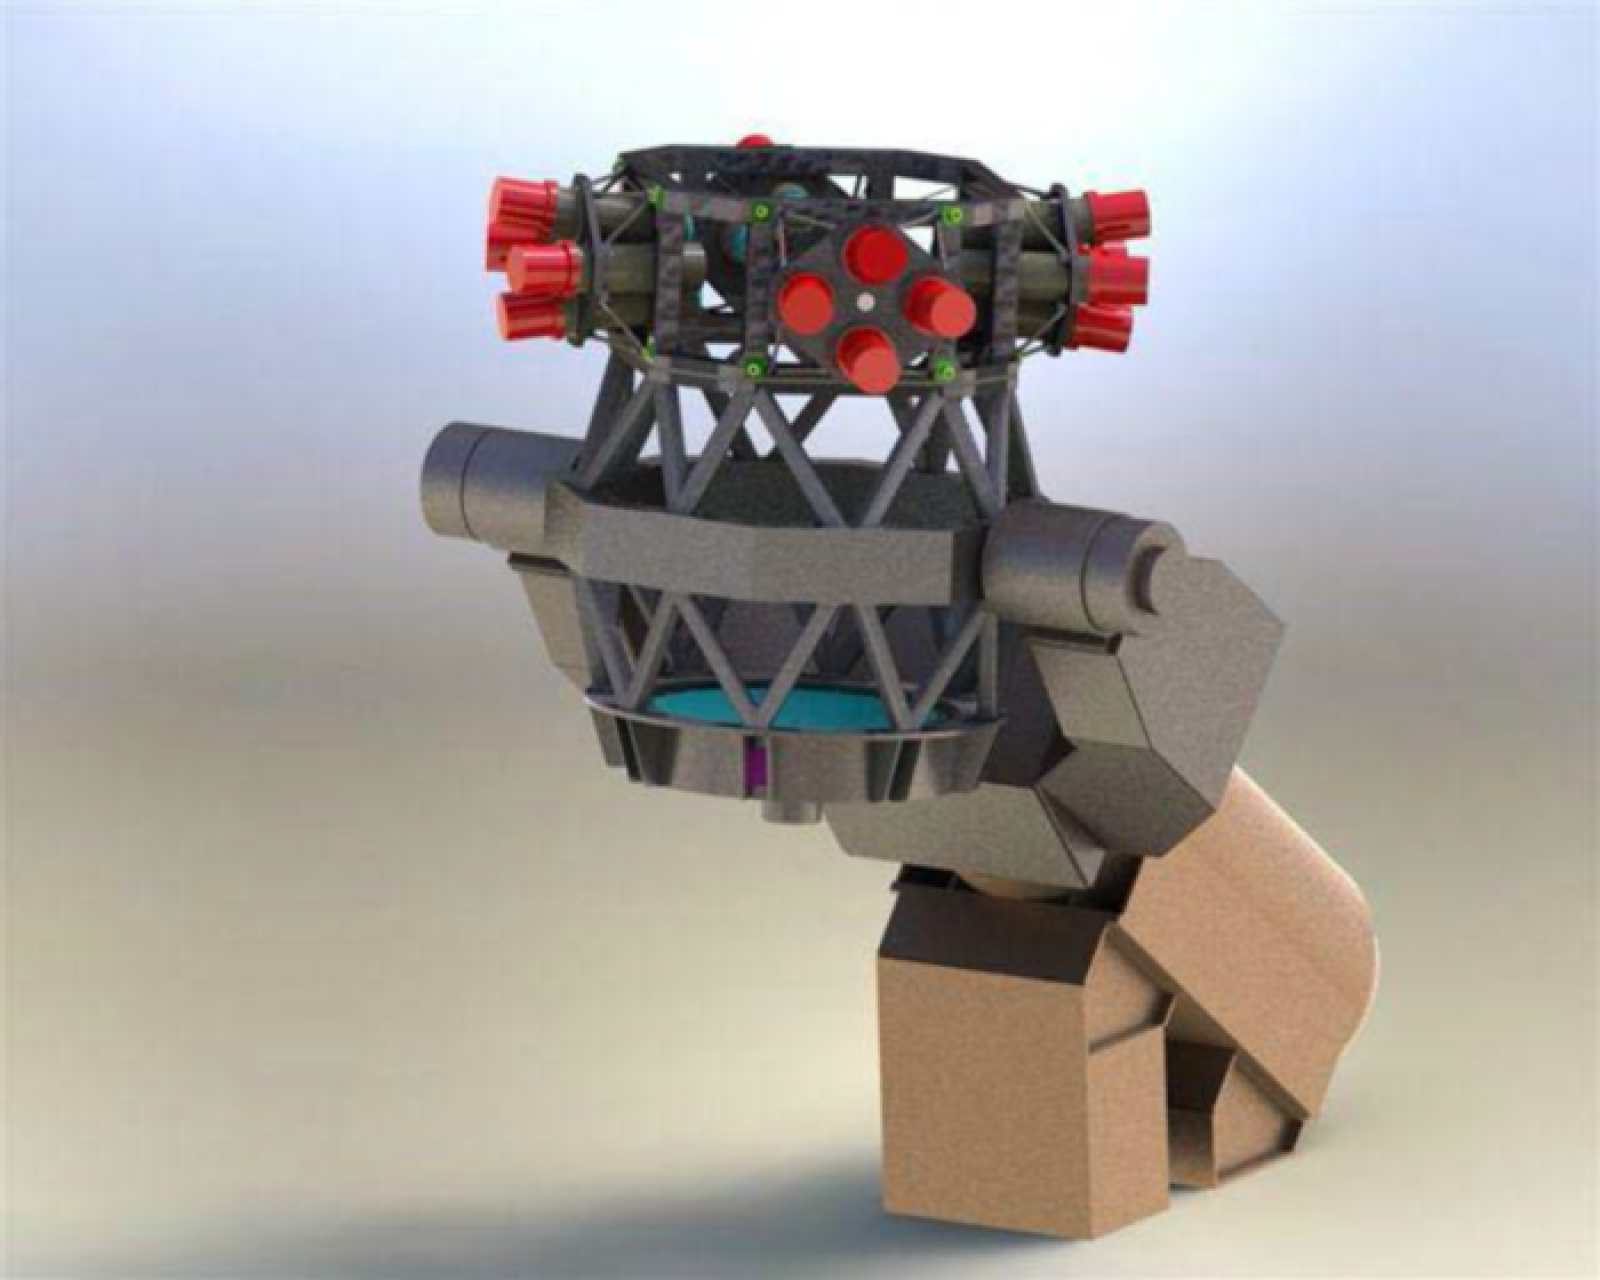 El diseño del nuevo telescopio incorpora 16 tubos ópticos que trabajan en conjunto como las facetas de los ojos de una mosca